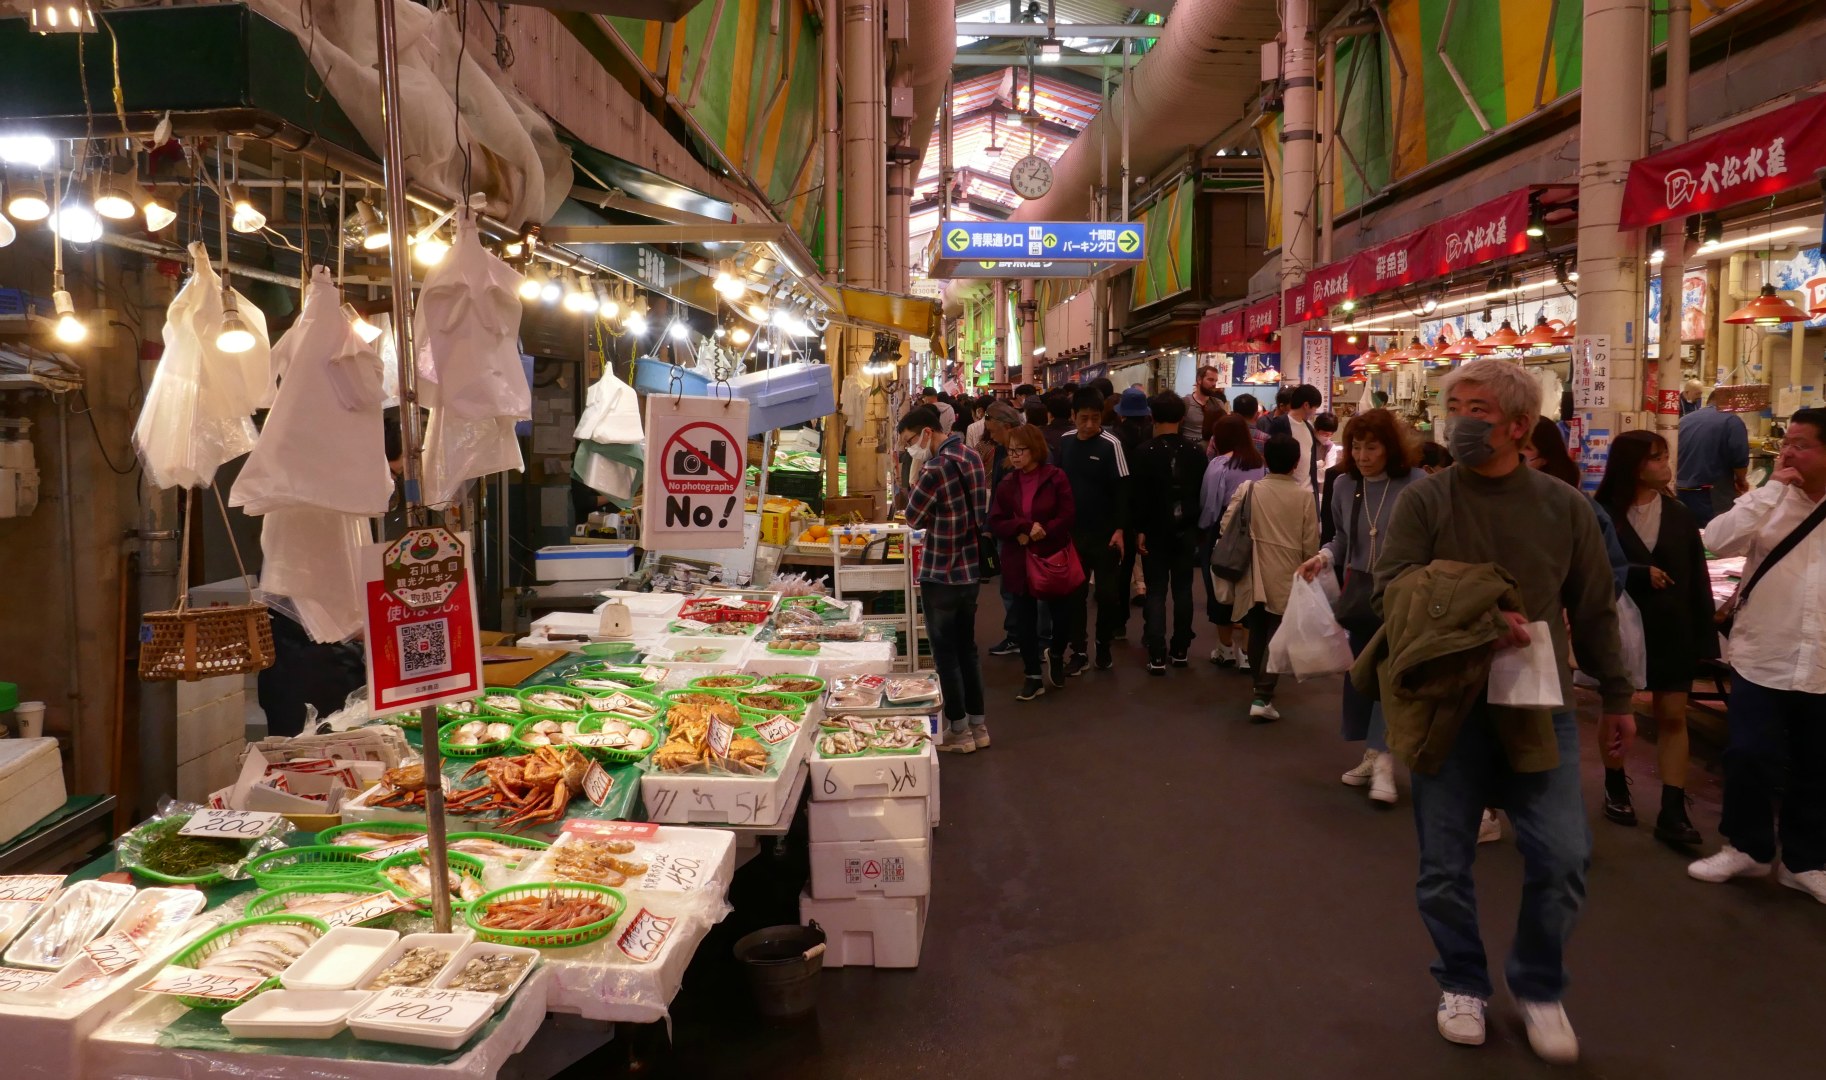 Omi-cho Market, Kanazawa